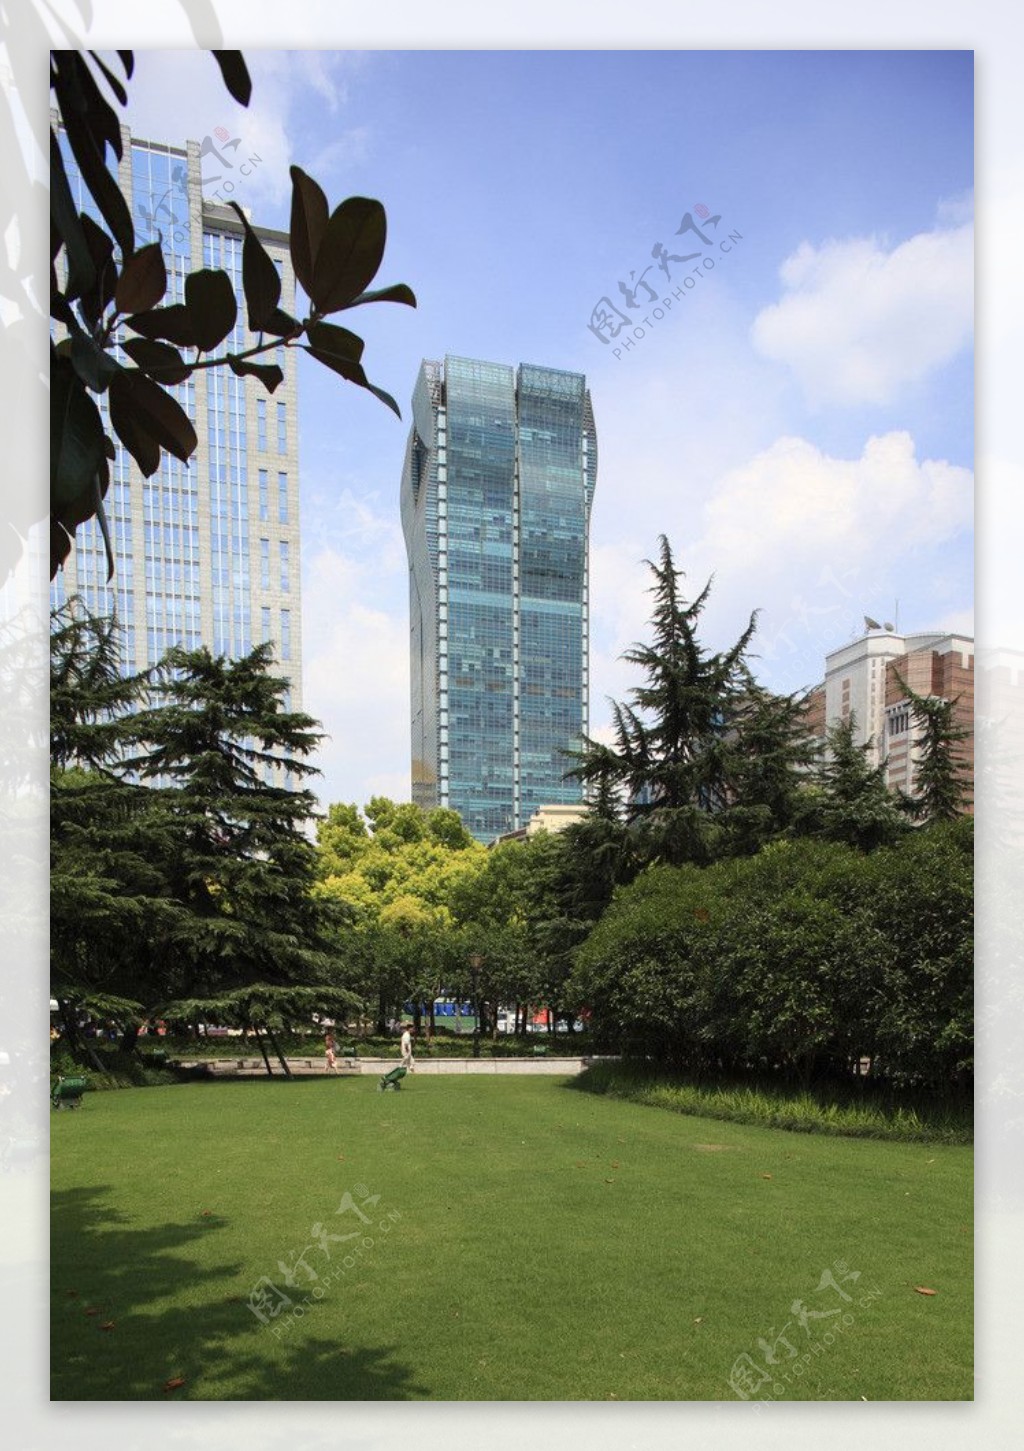 上海银城数码大厦图片